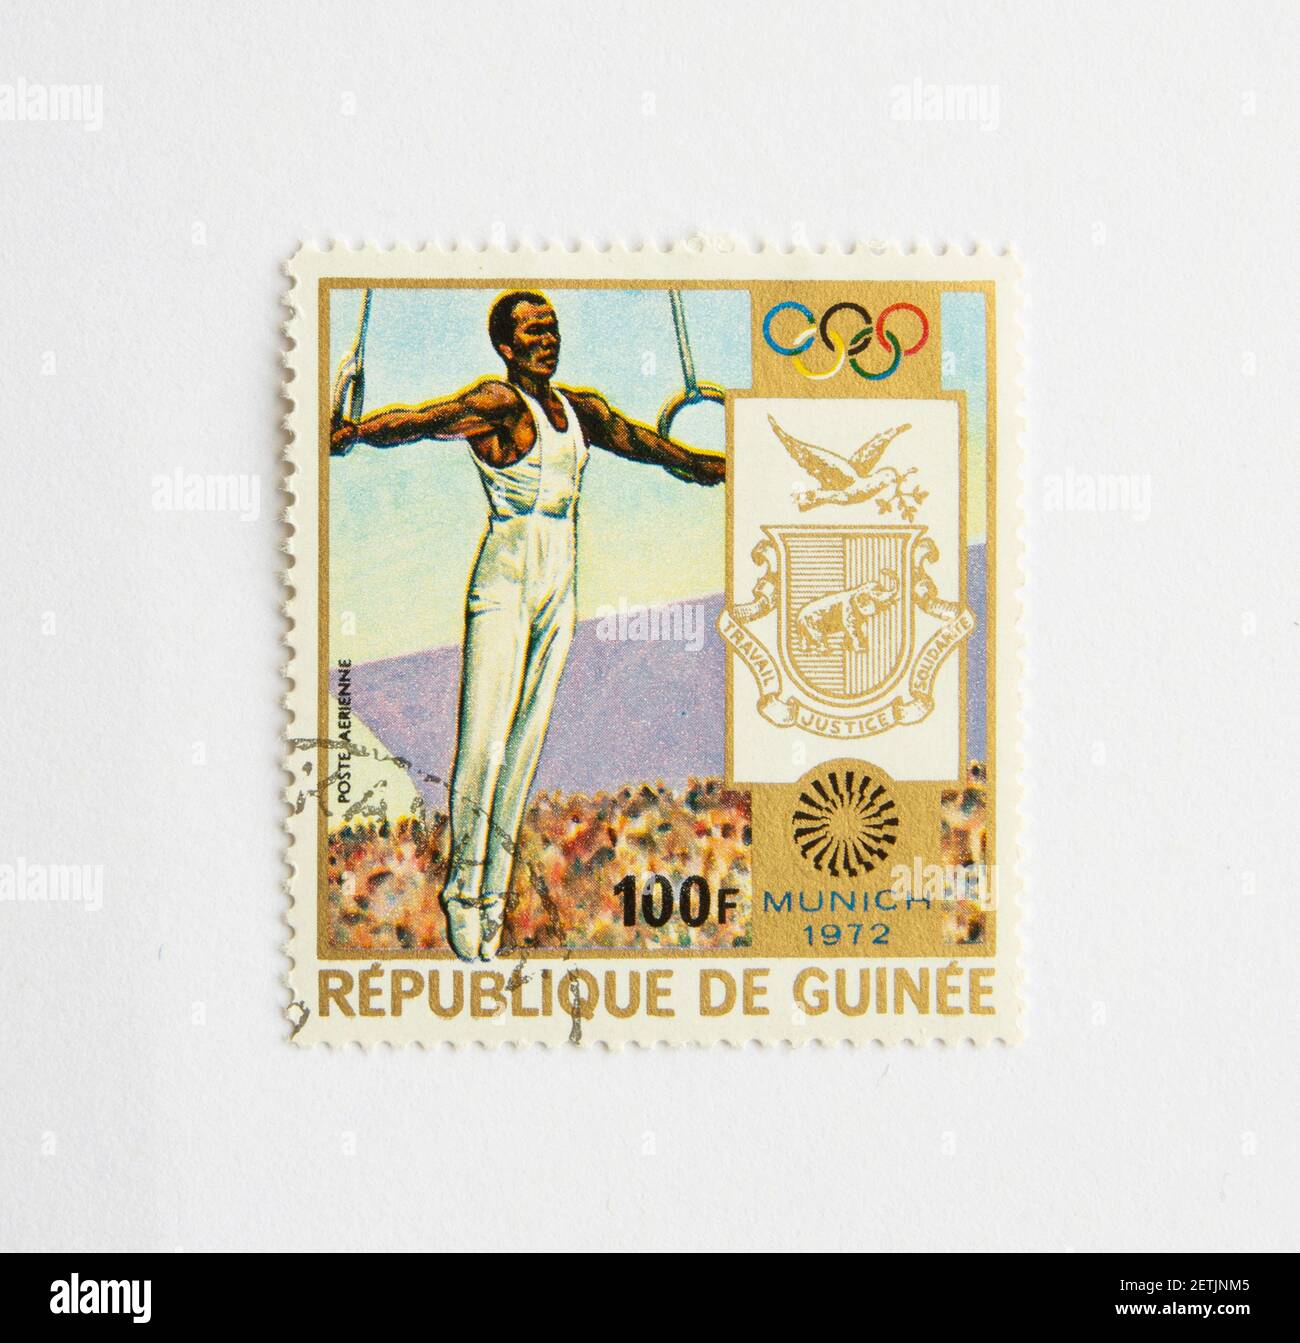 01.03.2021 Istanbul Turchia. Repubblica Guinea francobollo. Circa 1972. giochi olimpici di monaco. Ginnastica Foto Stock